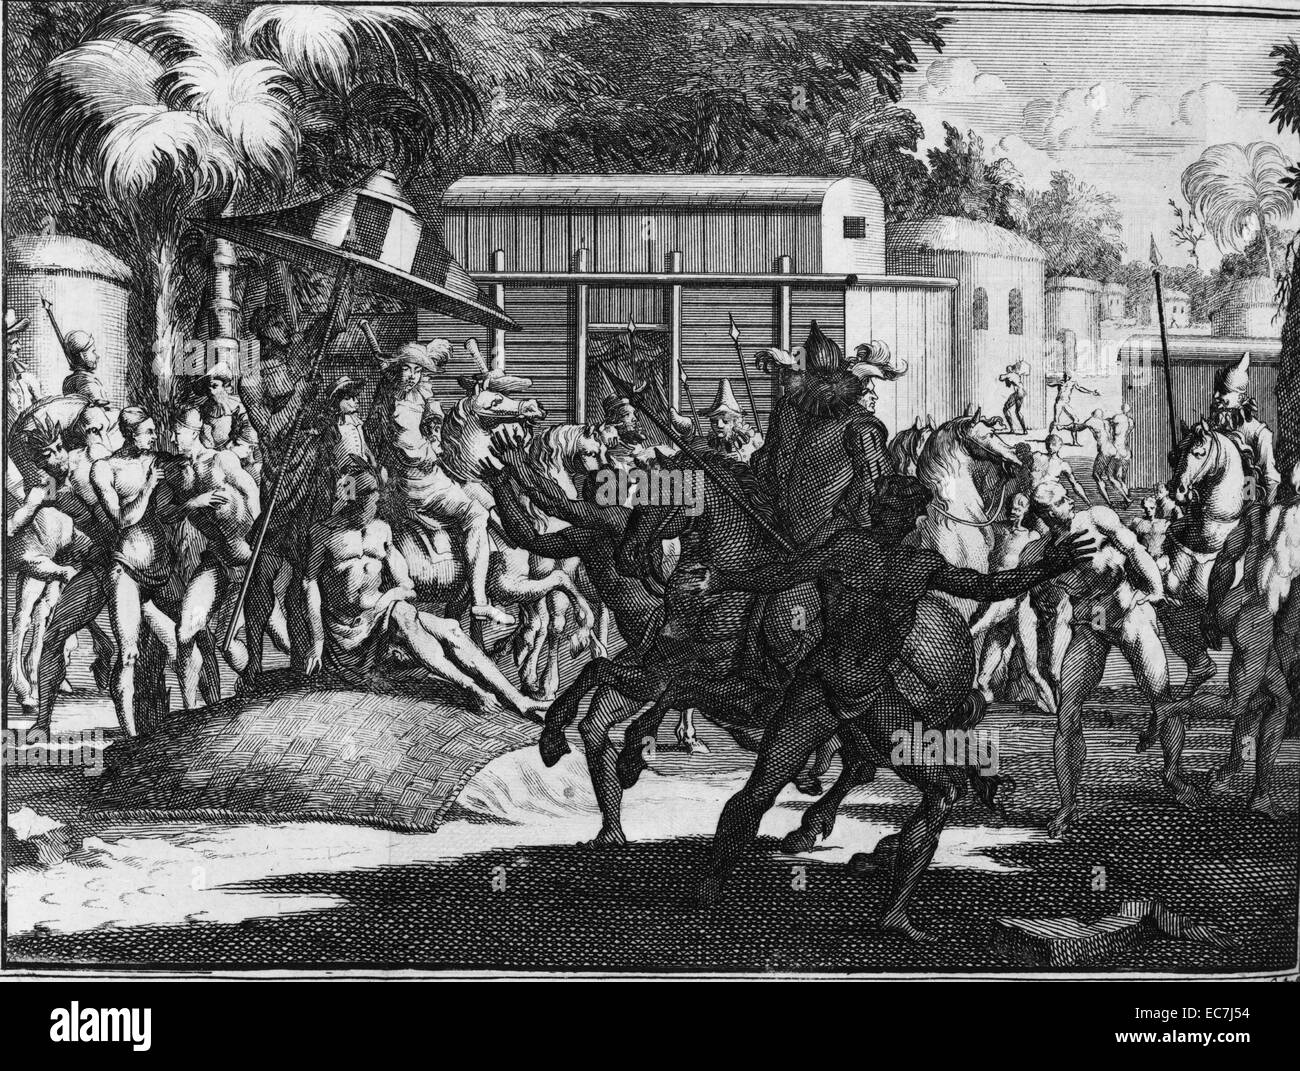 Il modo in cui Toscaluça ha ricevuto il generale, 1731. Hernando De Soto era un esploratore spagnolo e conquistador che ha condotto la prima spedizione europea nel territorio del moderno-giorno negli Stati Uniti. Foto Stock